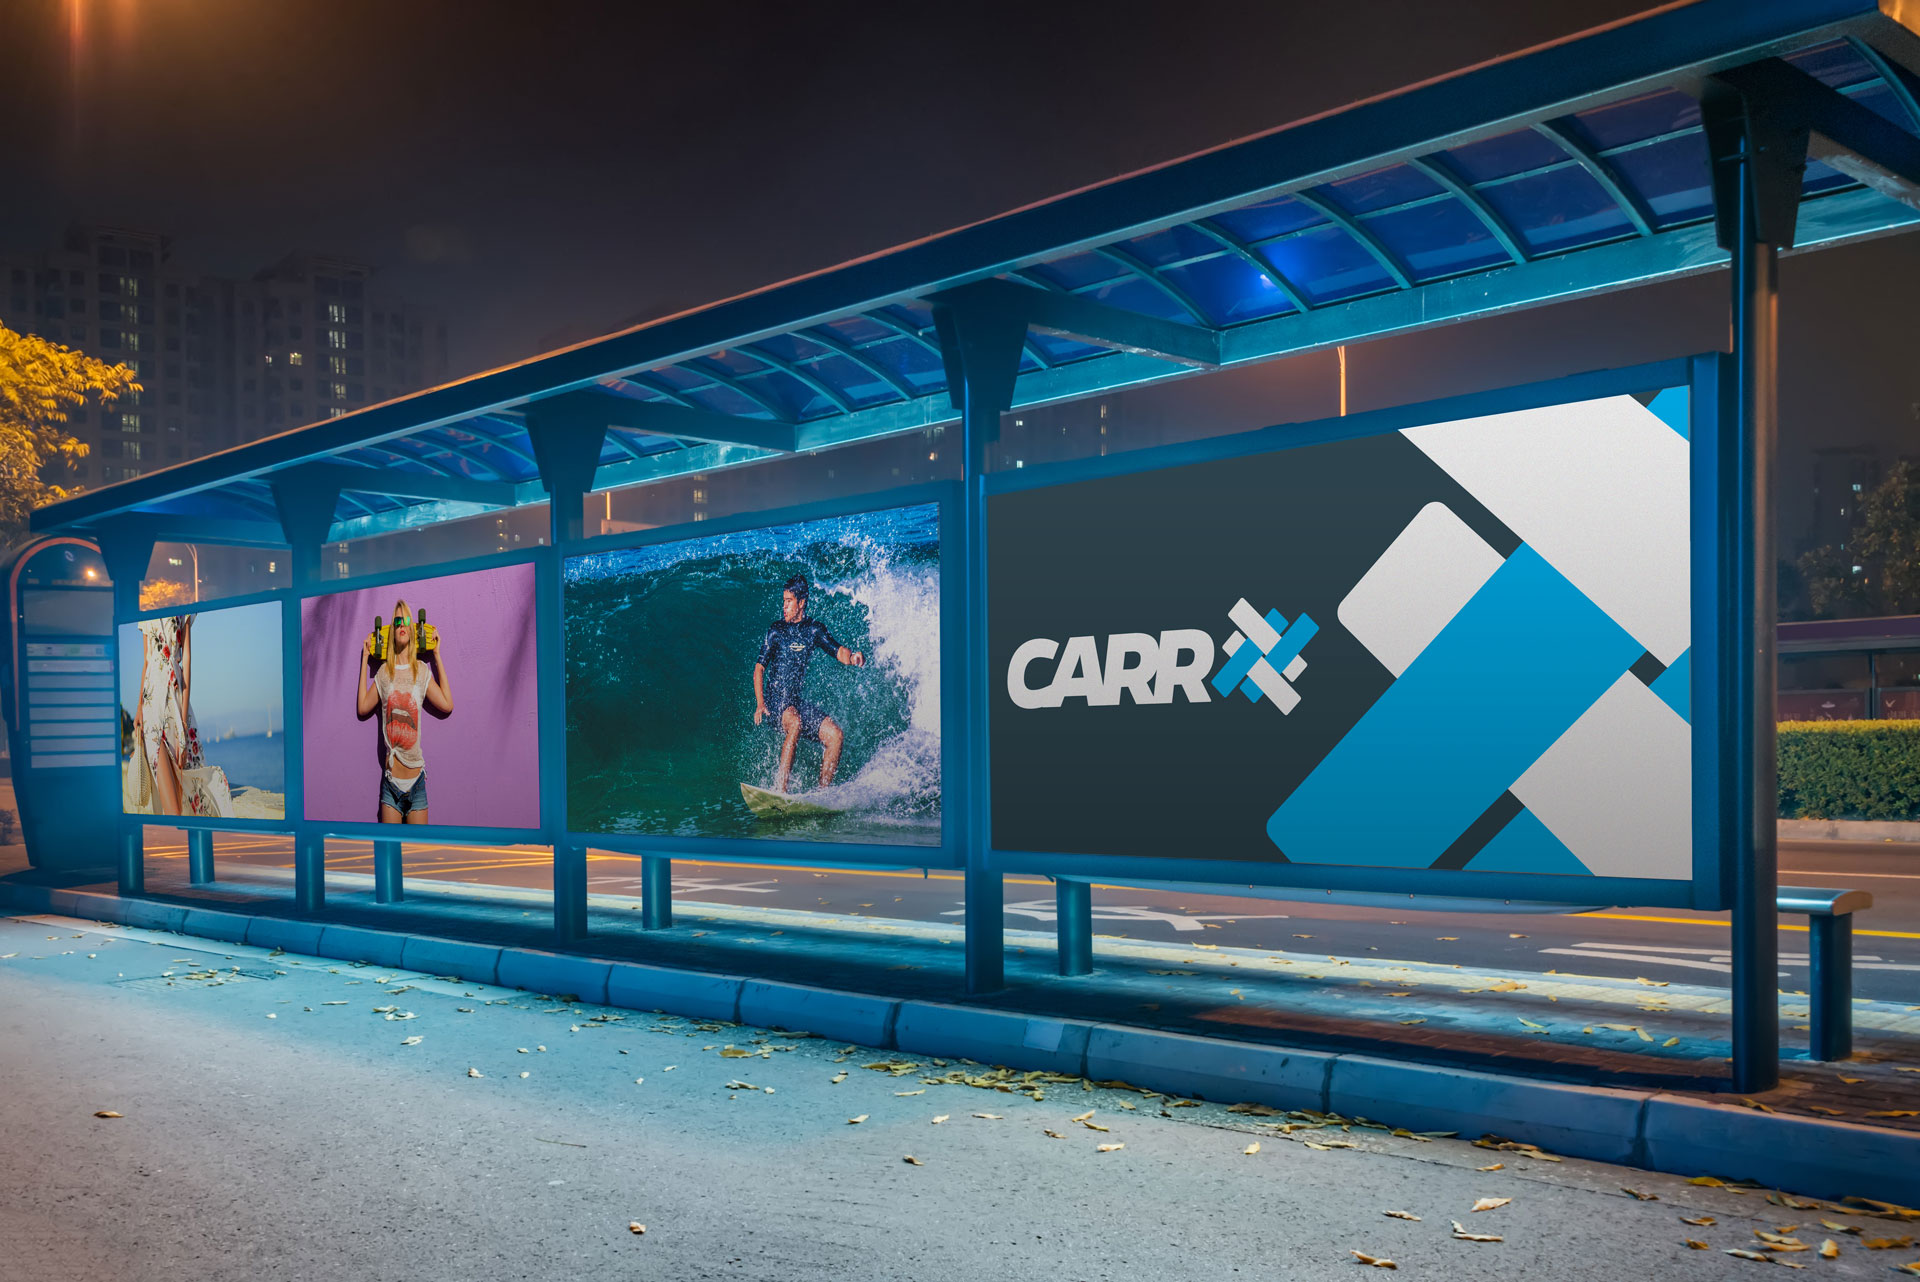 carr-print-media-billboard-2019-08